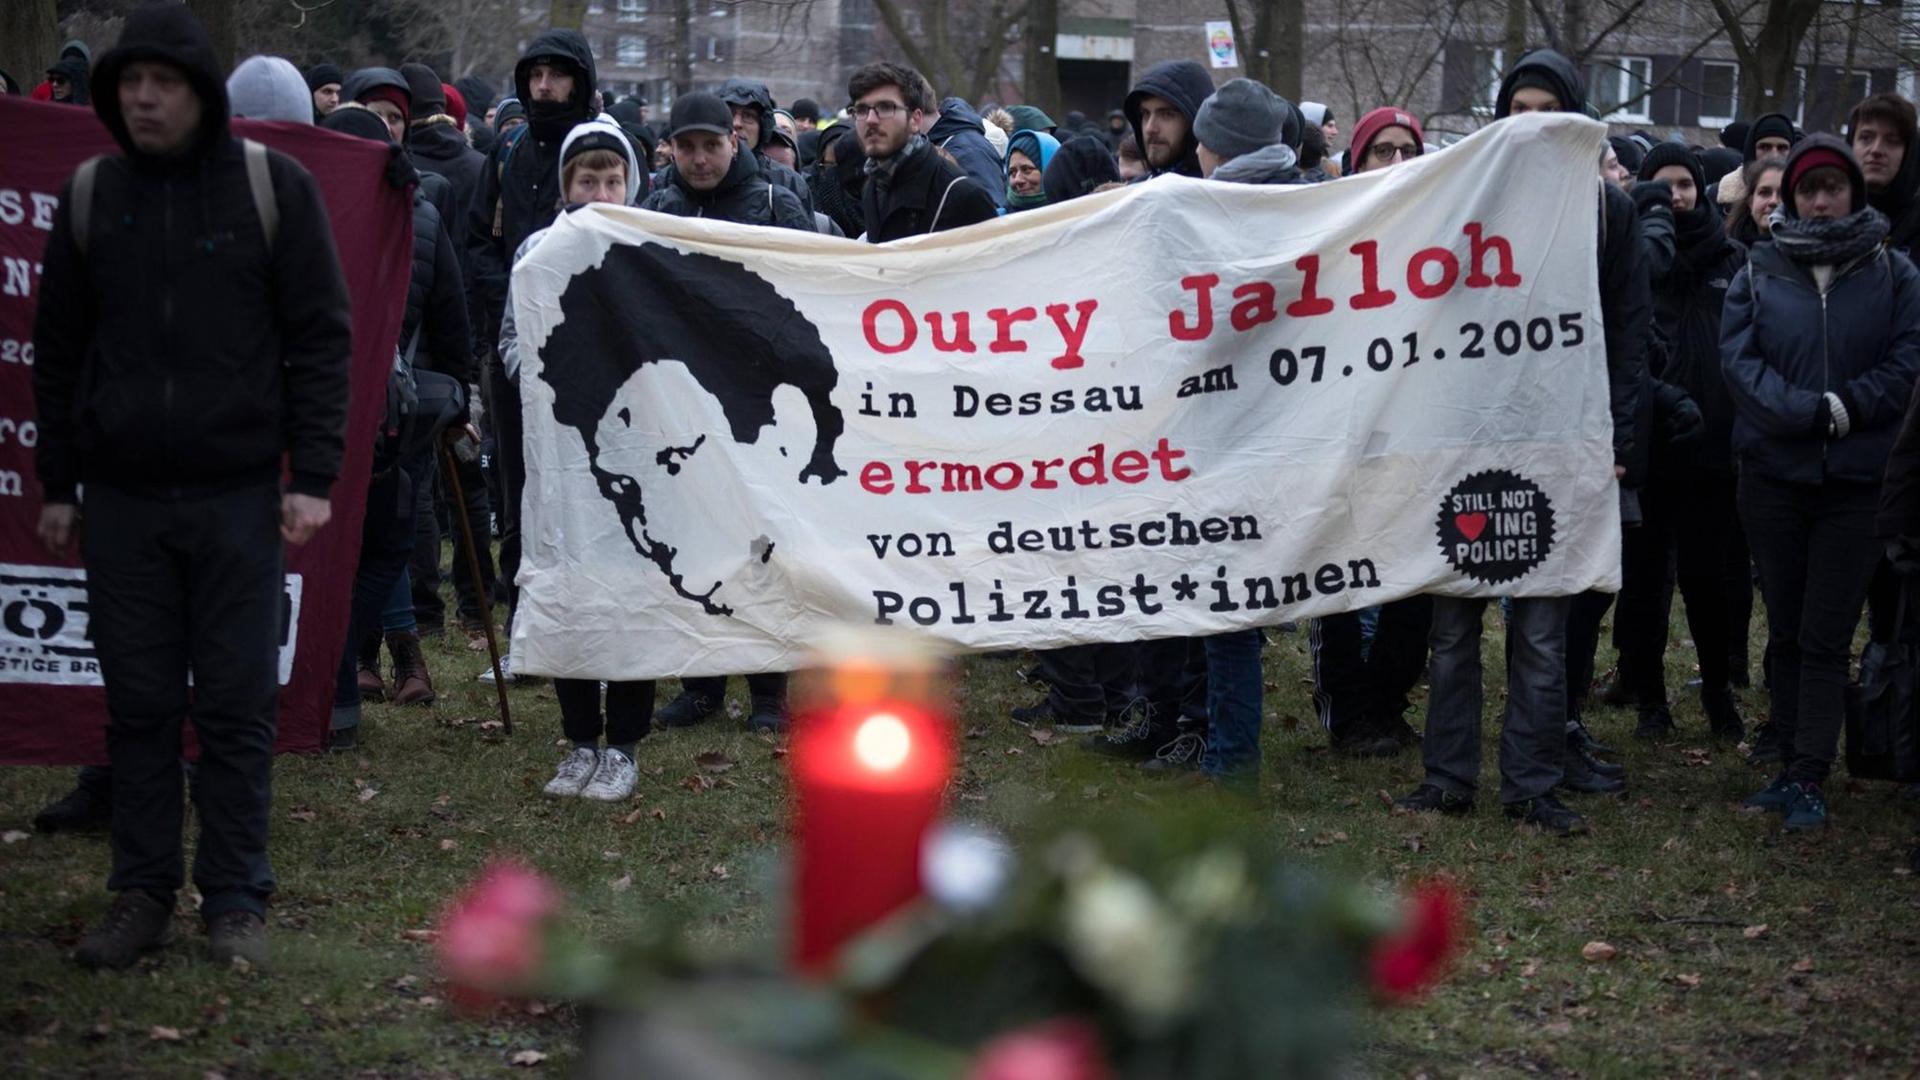 Demonstrierende halten ein Banner, auf dem steht: Oury Jalloh in Dessau am 07.01.2005 ermordet von deutschen Polizist*innen.